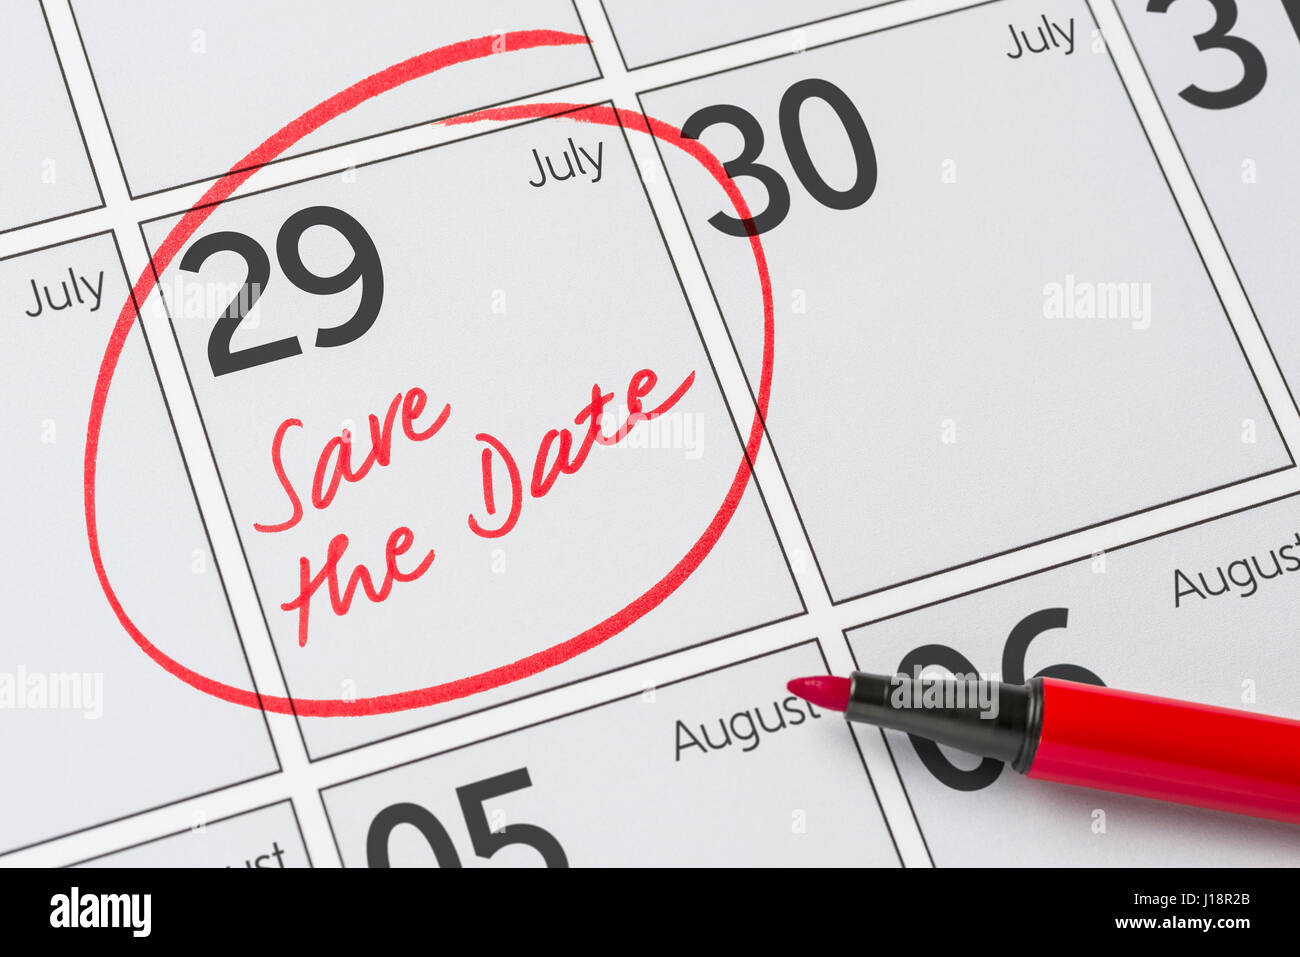 Enregistrer la date inscrite sur un calendrier - Juillet 29 Banque D'Images